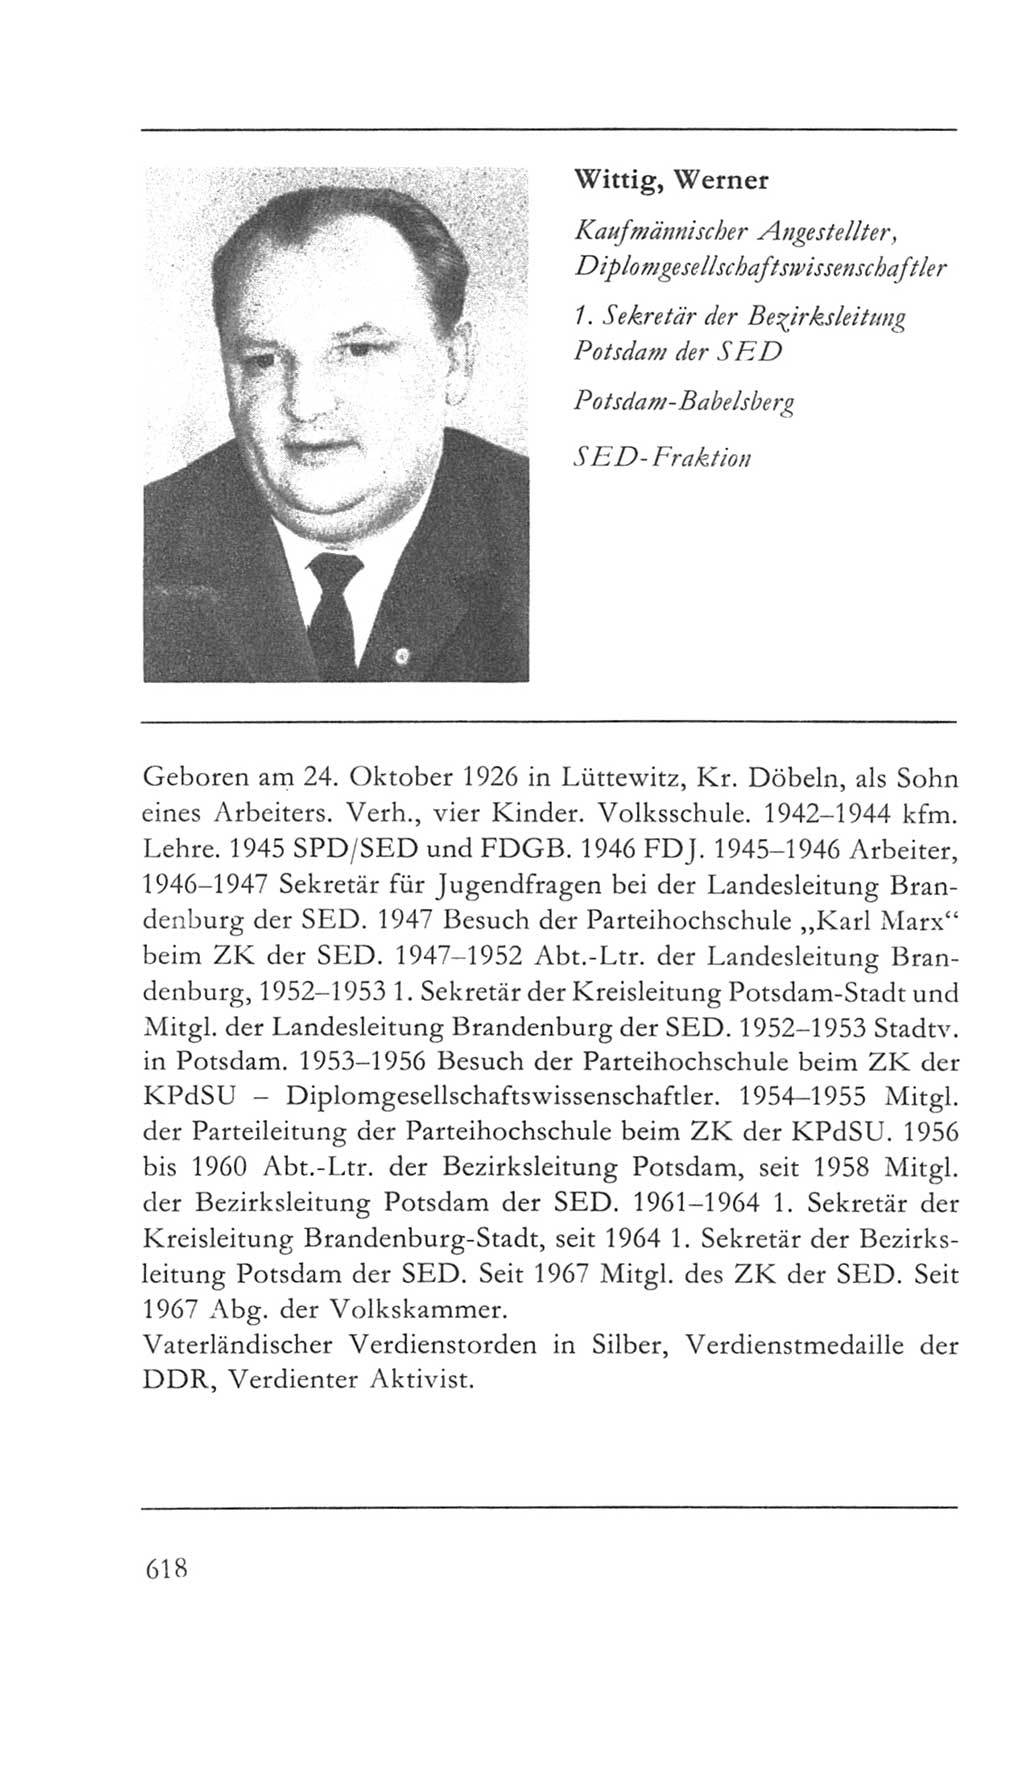 Volkskammer (VK) der Deutschen Demokratischen Republik (DDR) 5. Wahlperiode 1967-1971, Seite 618 (VK. DDR 5. WP. 1967-1971, S. 618)